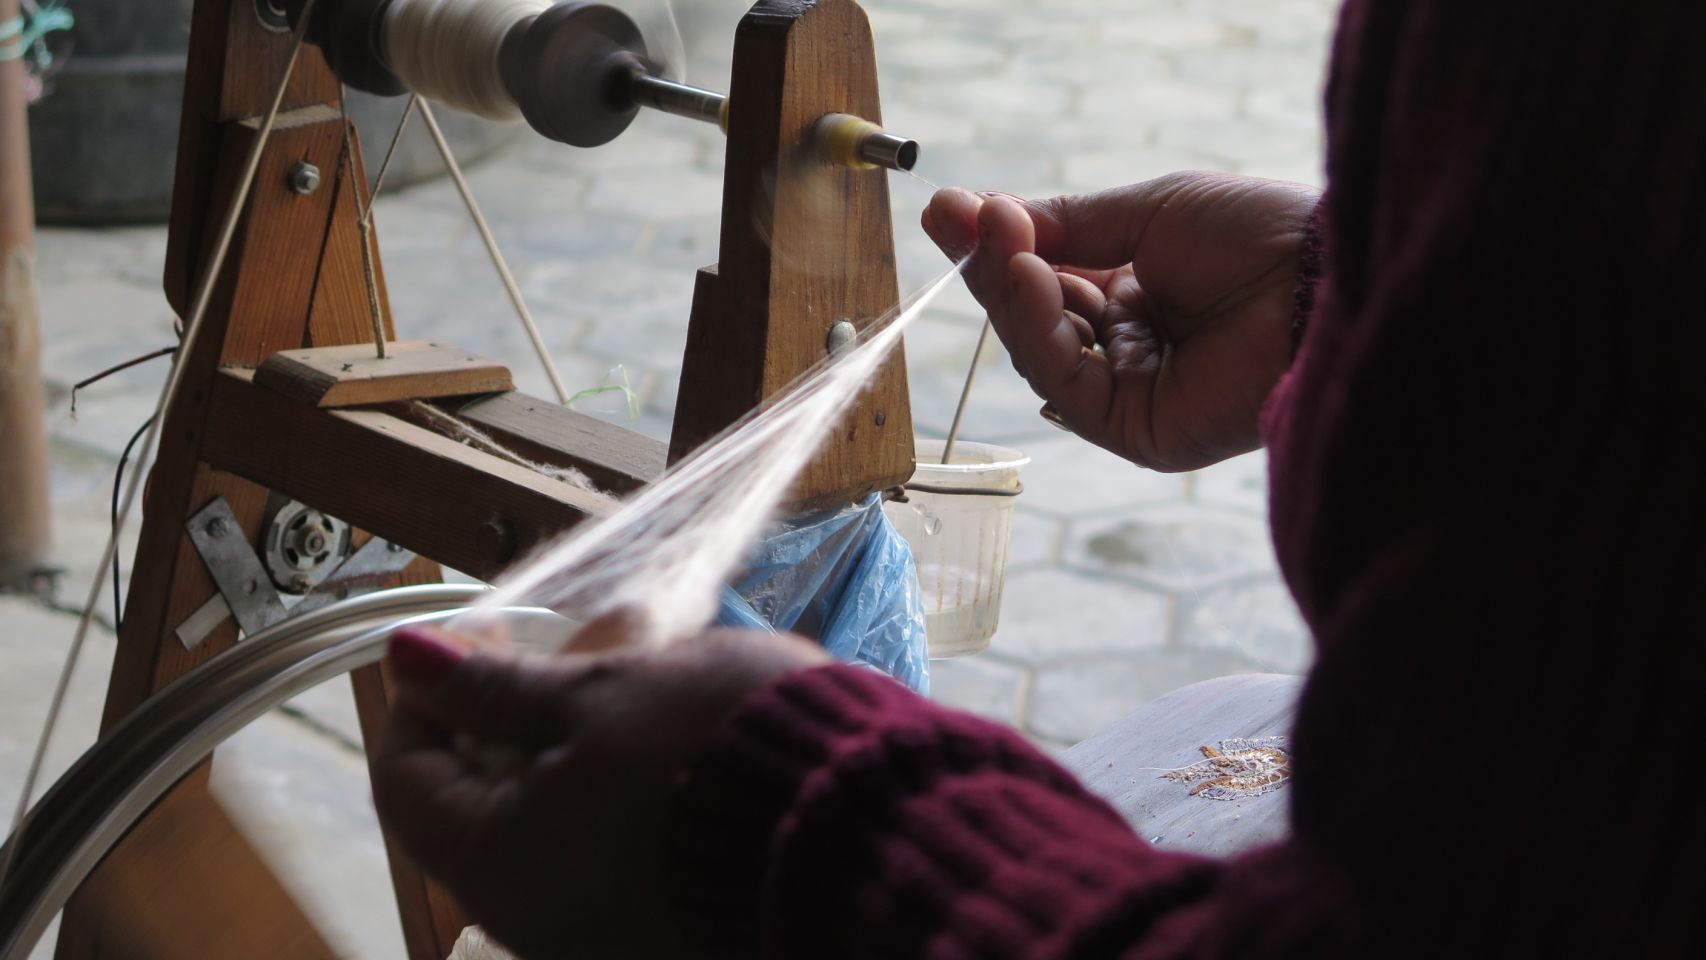 El proceso de hilado de la seda que realiza uno de los trabajadores de Matka en Nepal.